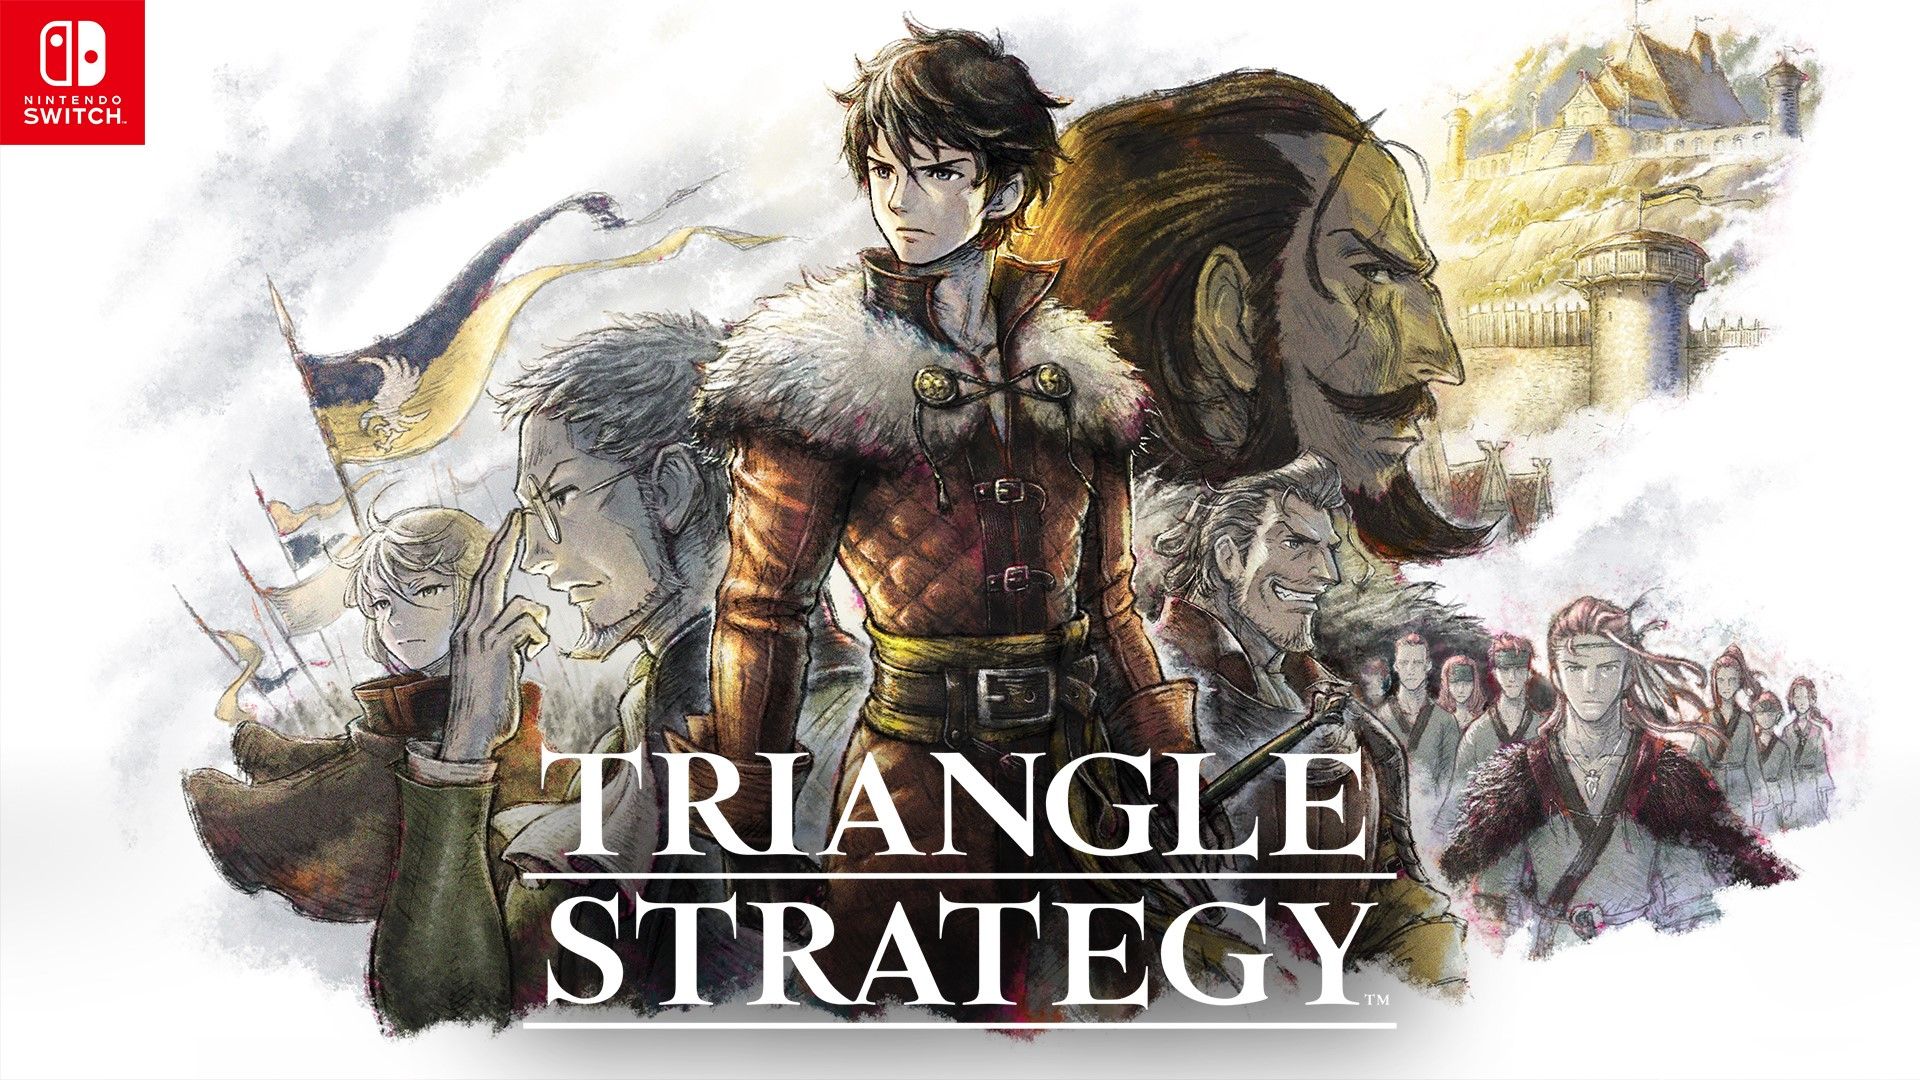 Triangle Strategy prodan u 800 tisuća primjeraka